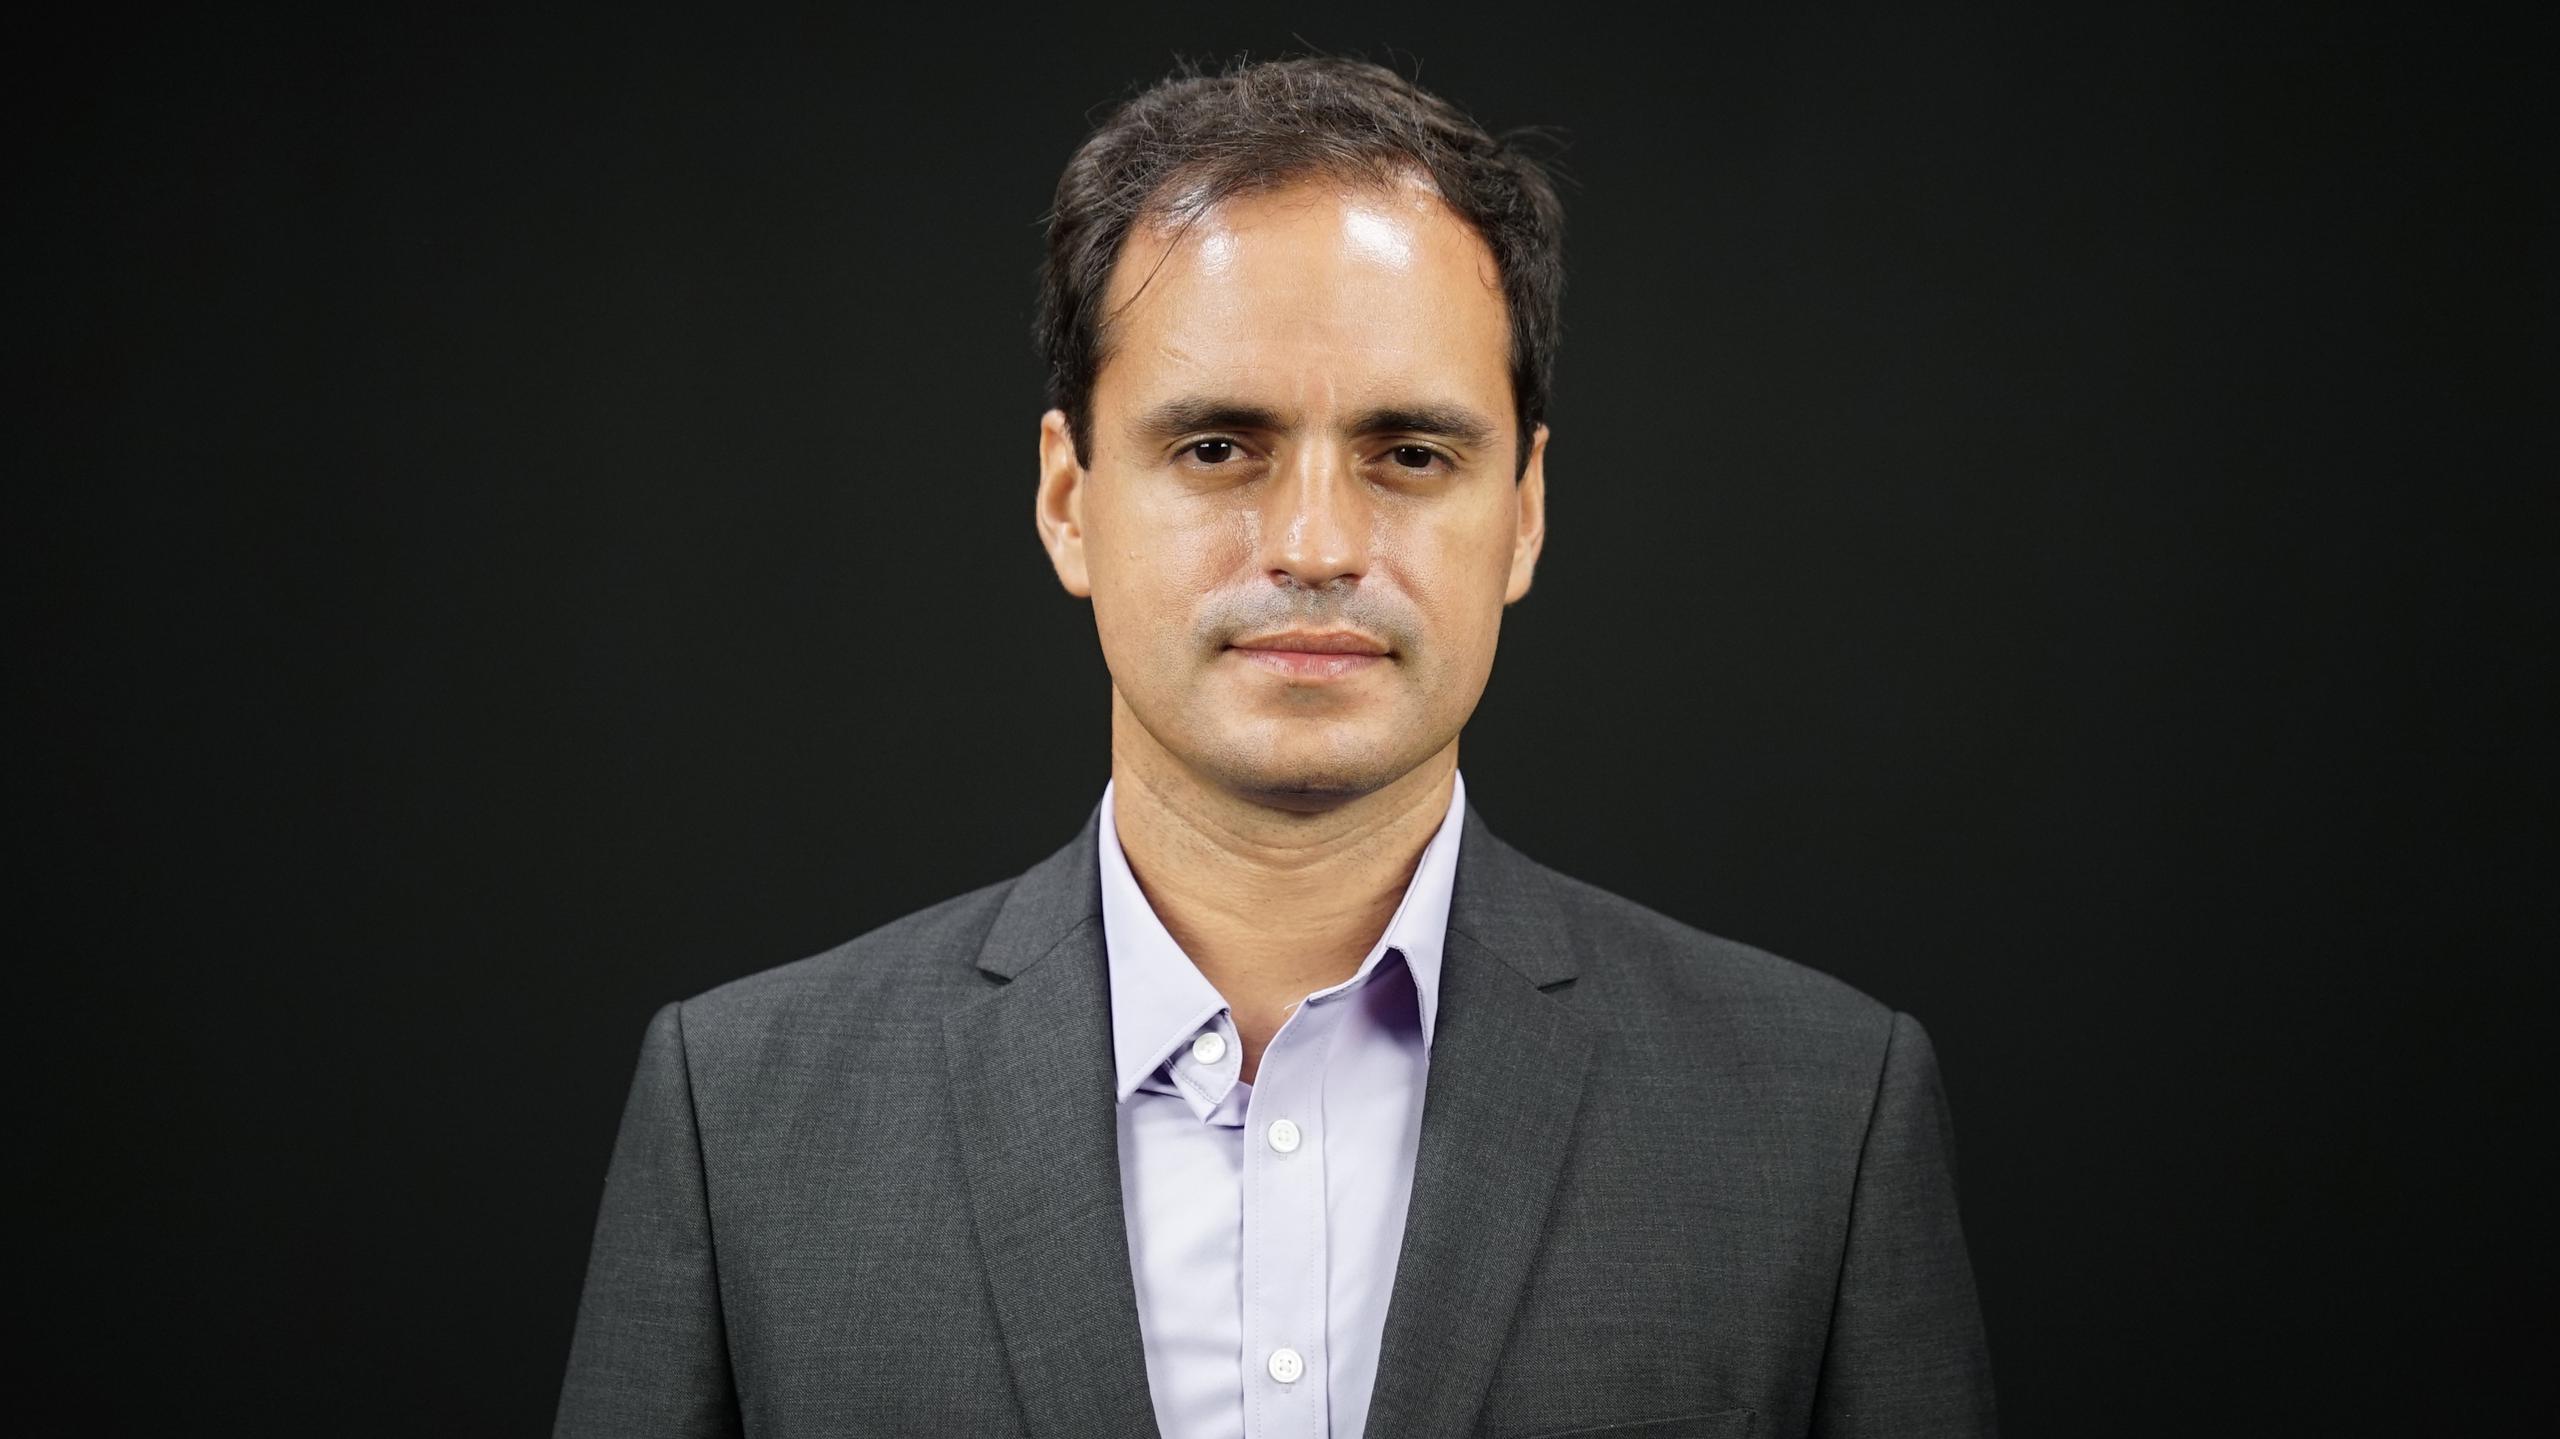 Daniel Colón Ramos es profesor de la Escuela de Medicina de la Universidad de Yale, miembro de la Asociación Nacional de Medicina y miembro de la Junta de Directores del Fideicomiso de Ciencia y Tecnología de Puerto Rico. Fue designado a presidir la Coalición Científica desde finales del 2020.